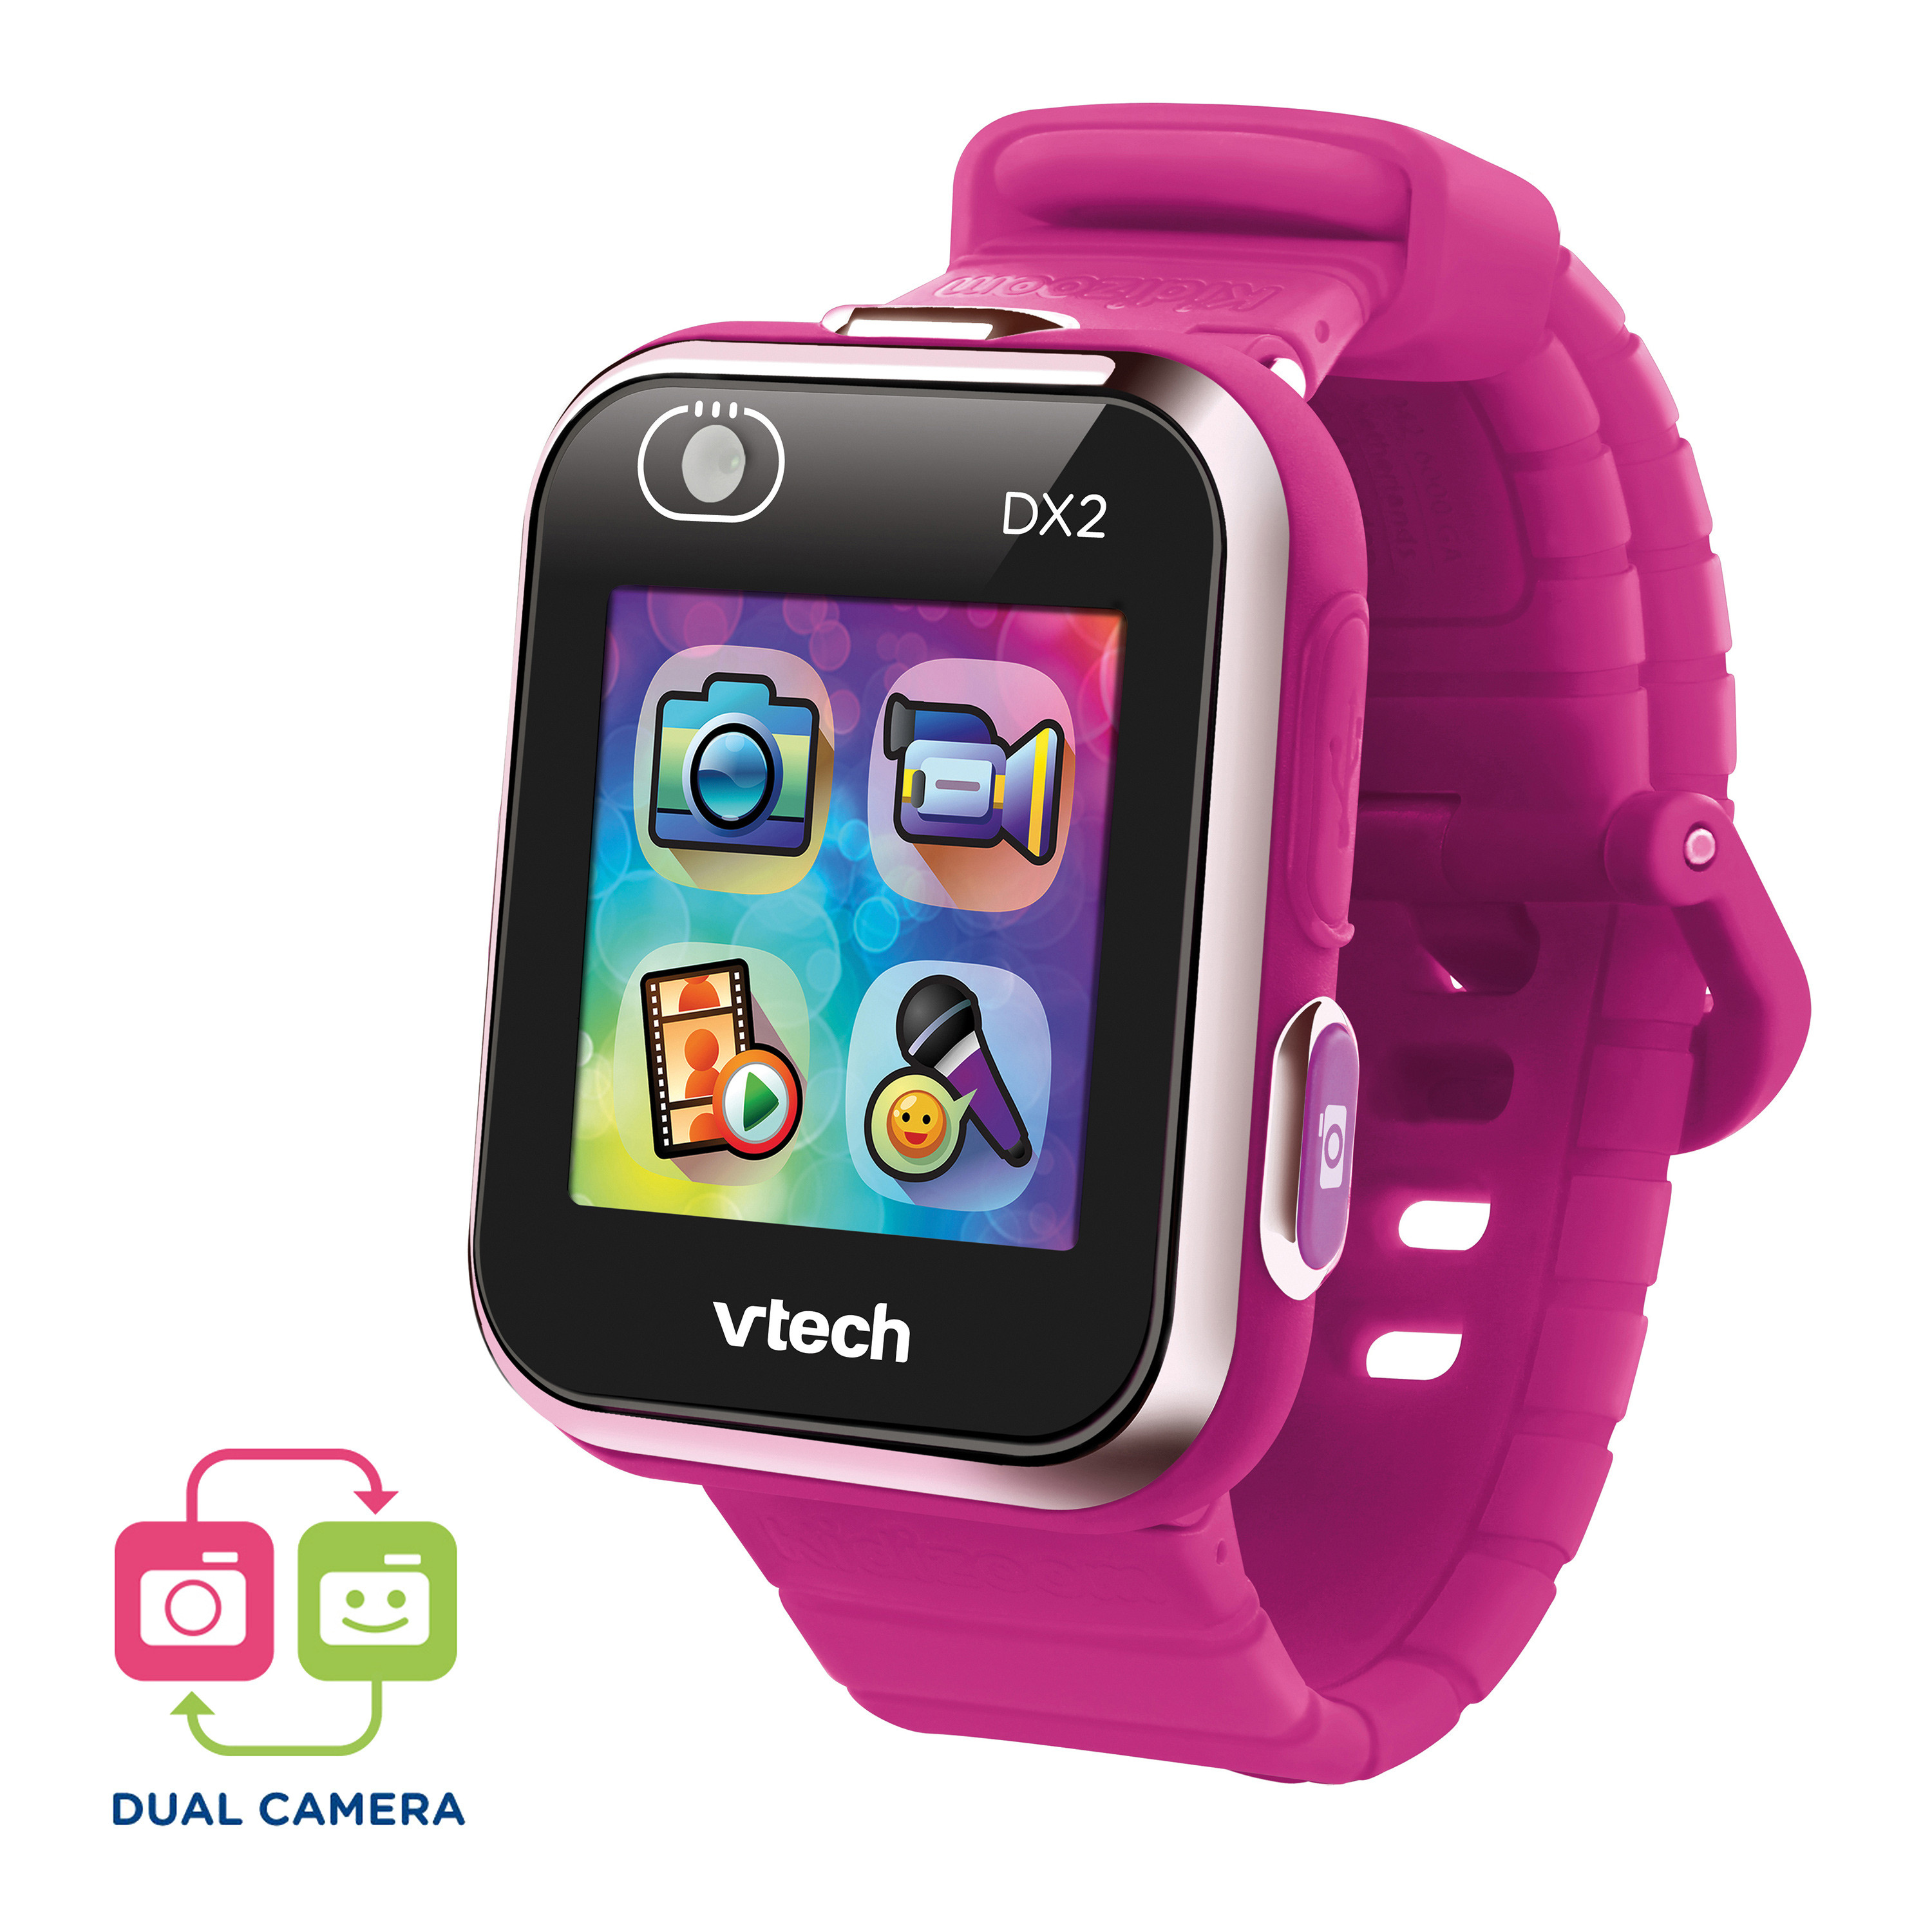 Kidizoom Smart Watch Vtech Dx2